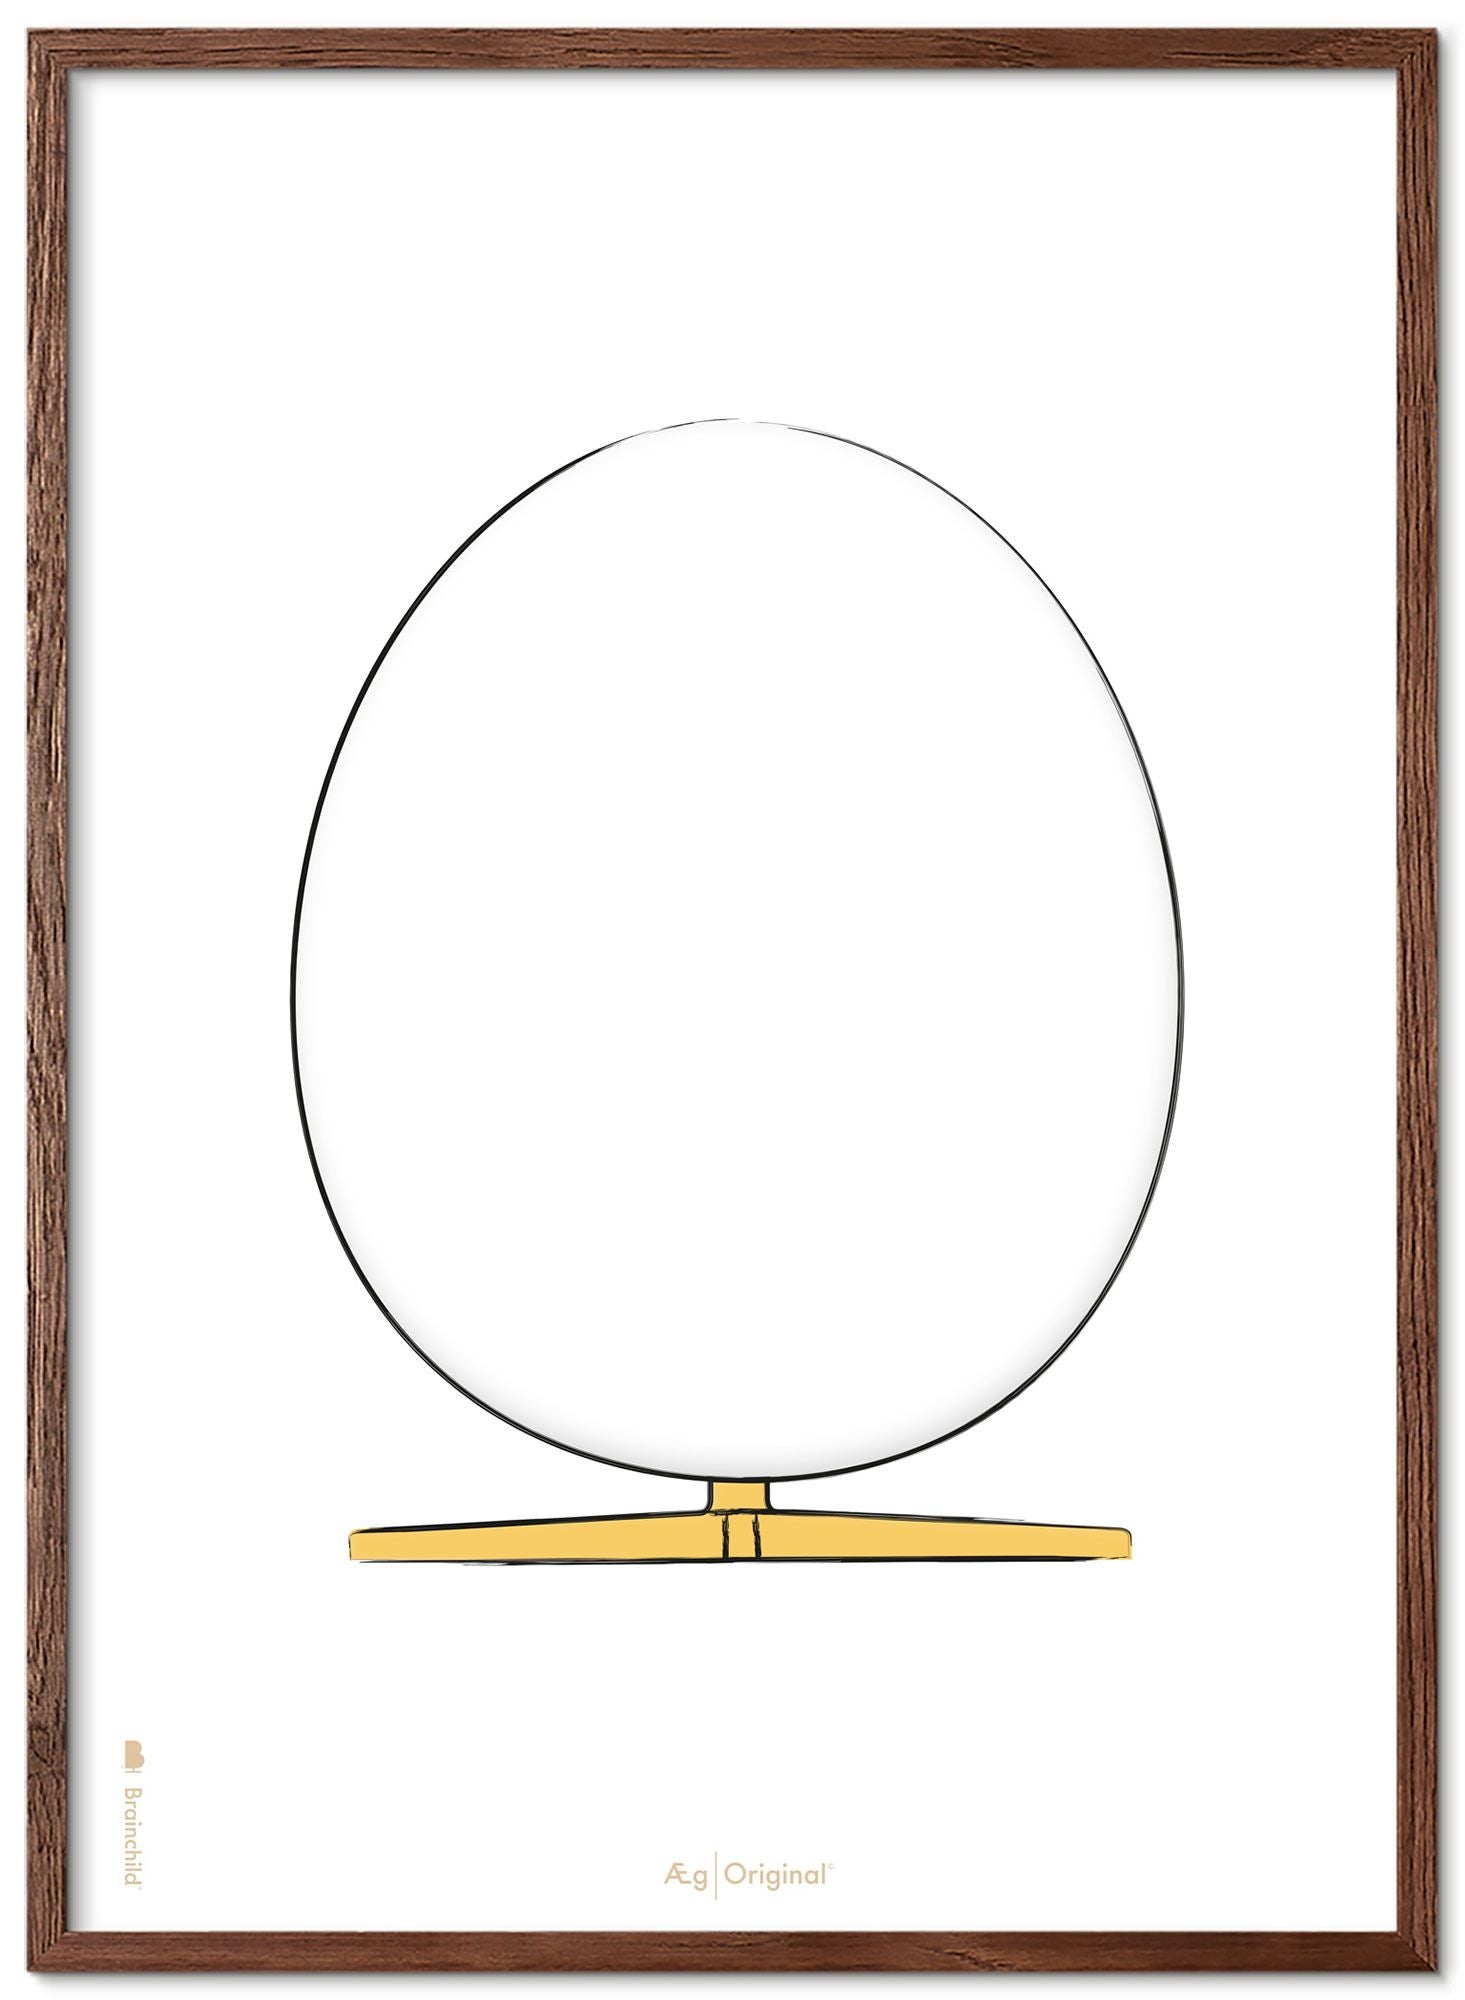 Prepare el póster de boceto de diseño de huevo con marco hecho de madera oscura A5, fondo blanco